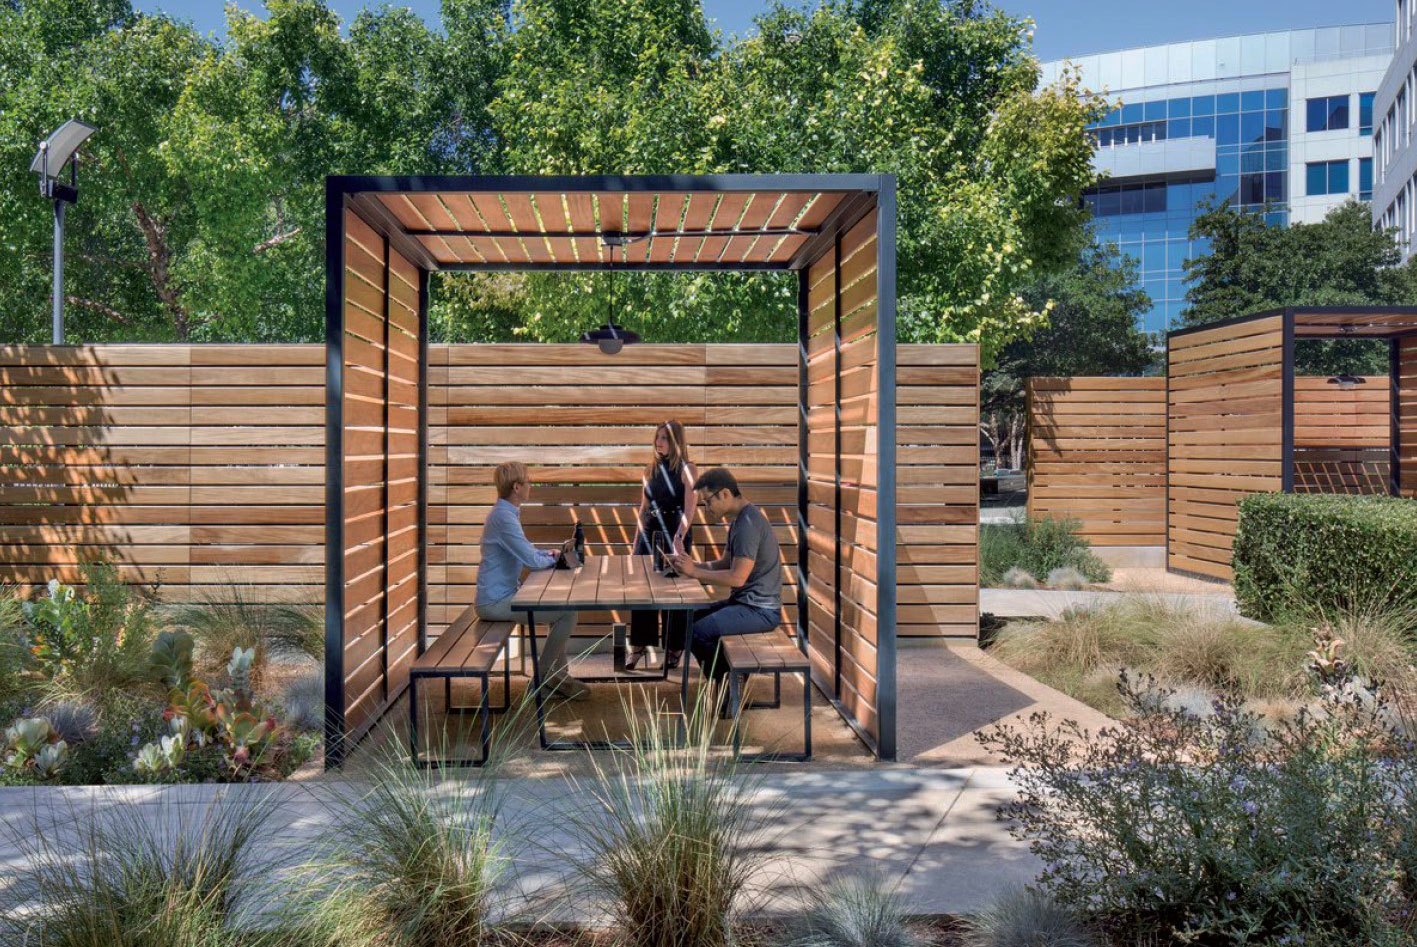 universities renovation outdoor spaces